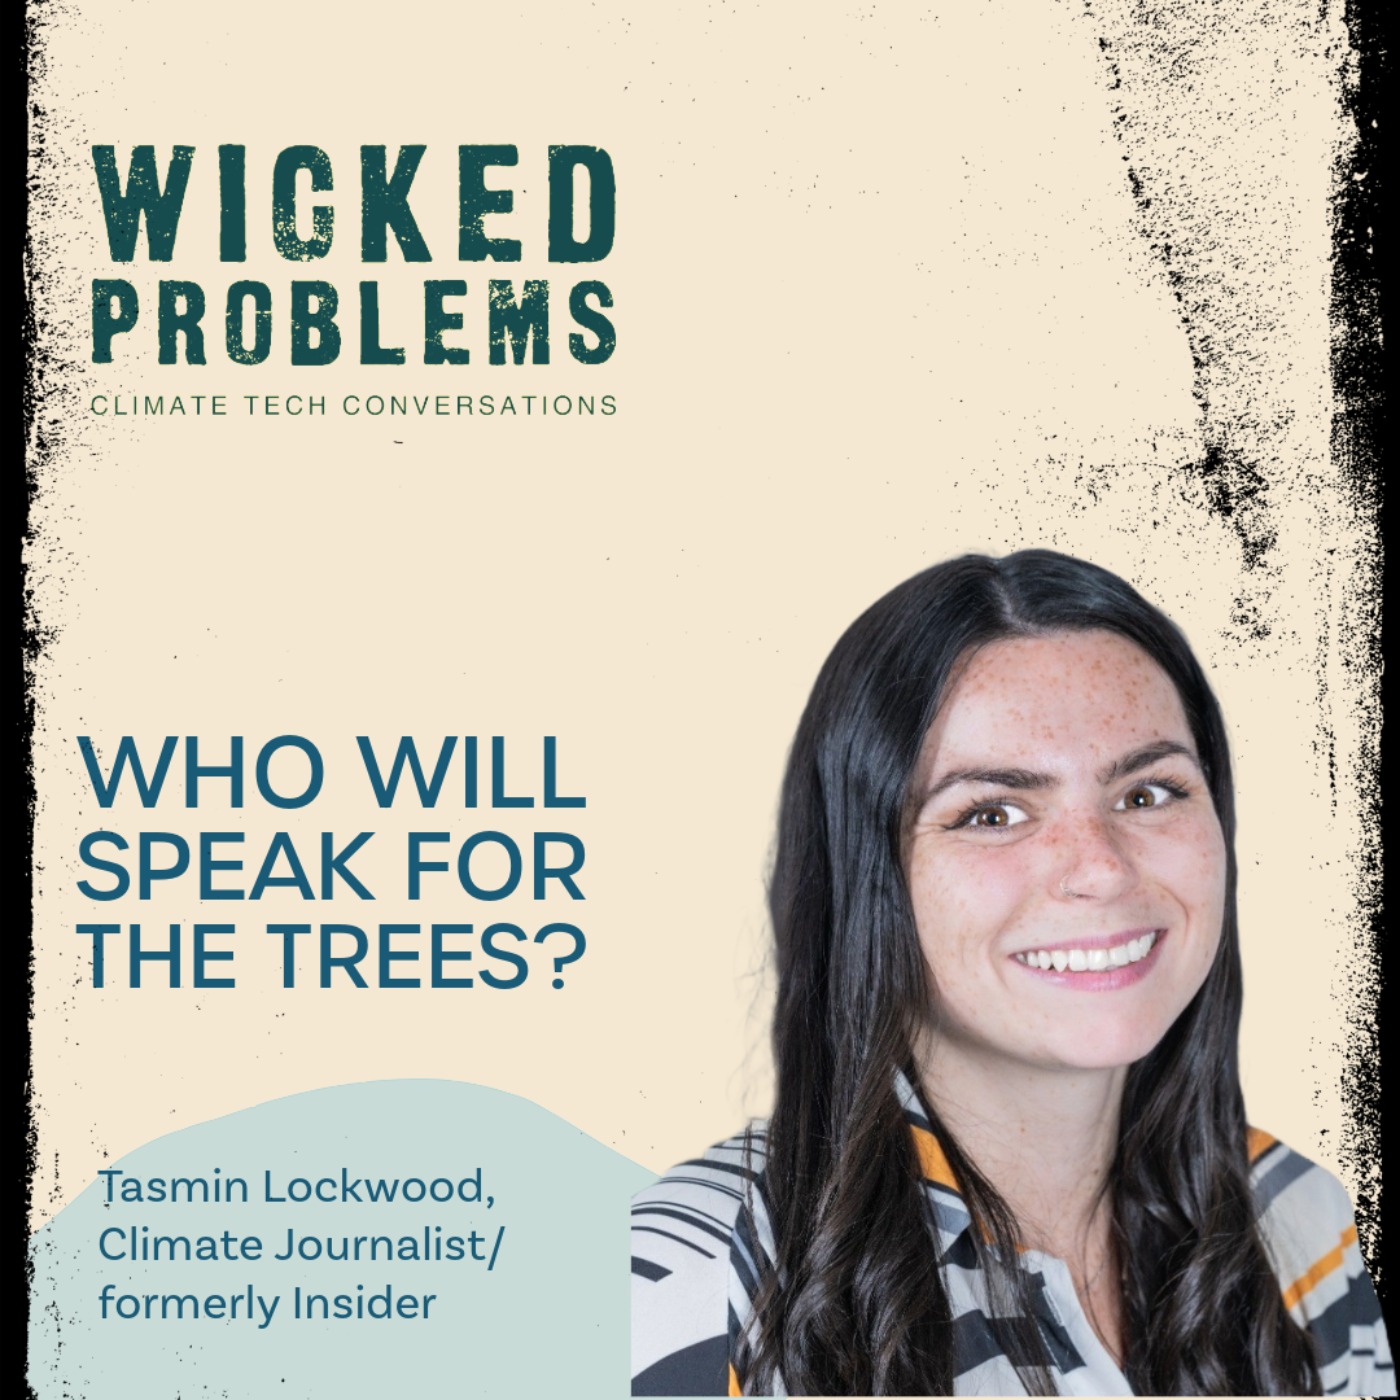 Tasmin Lockwood: Who will speak for the trees?